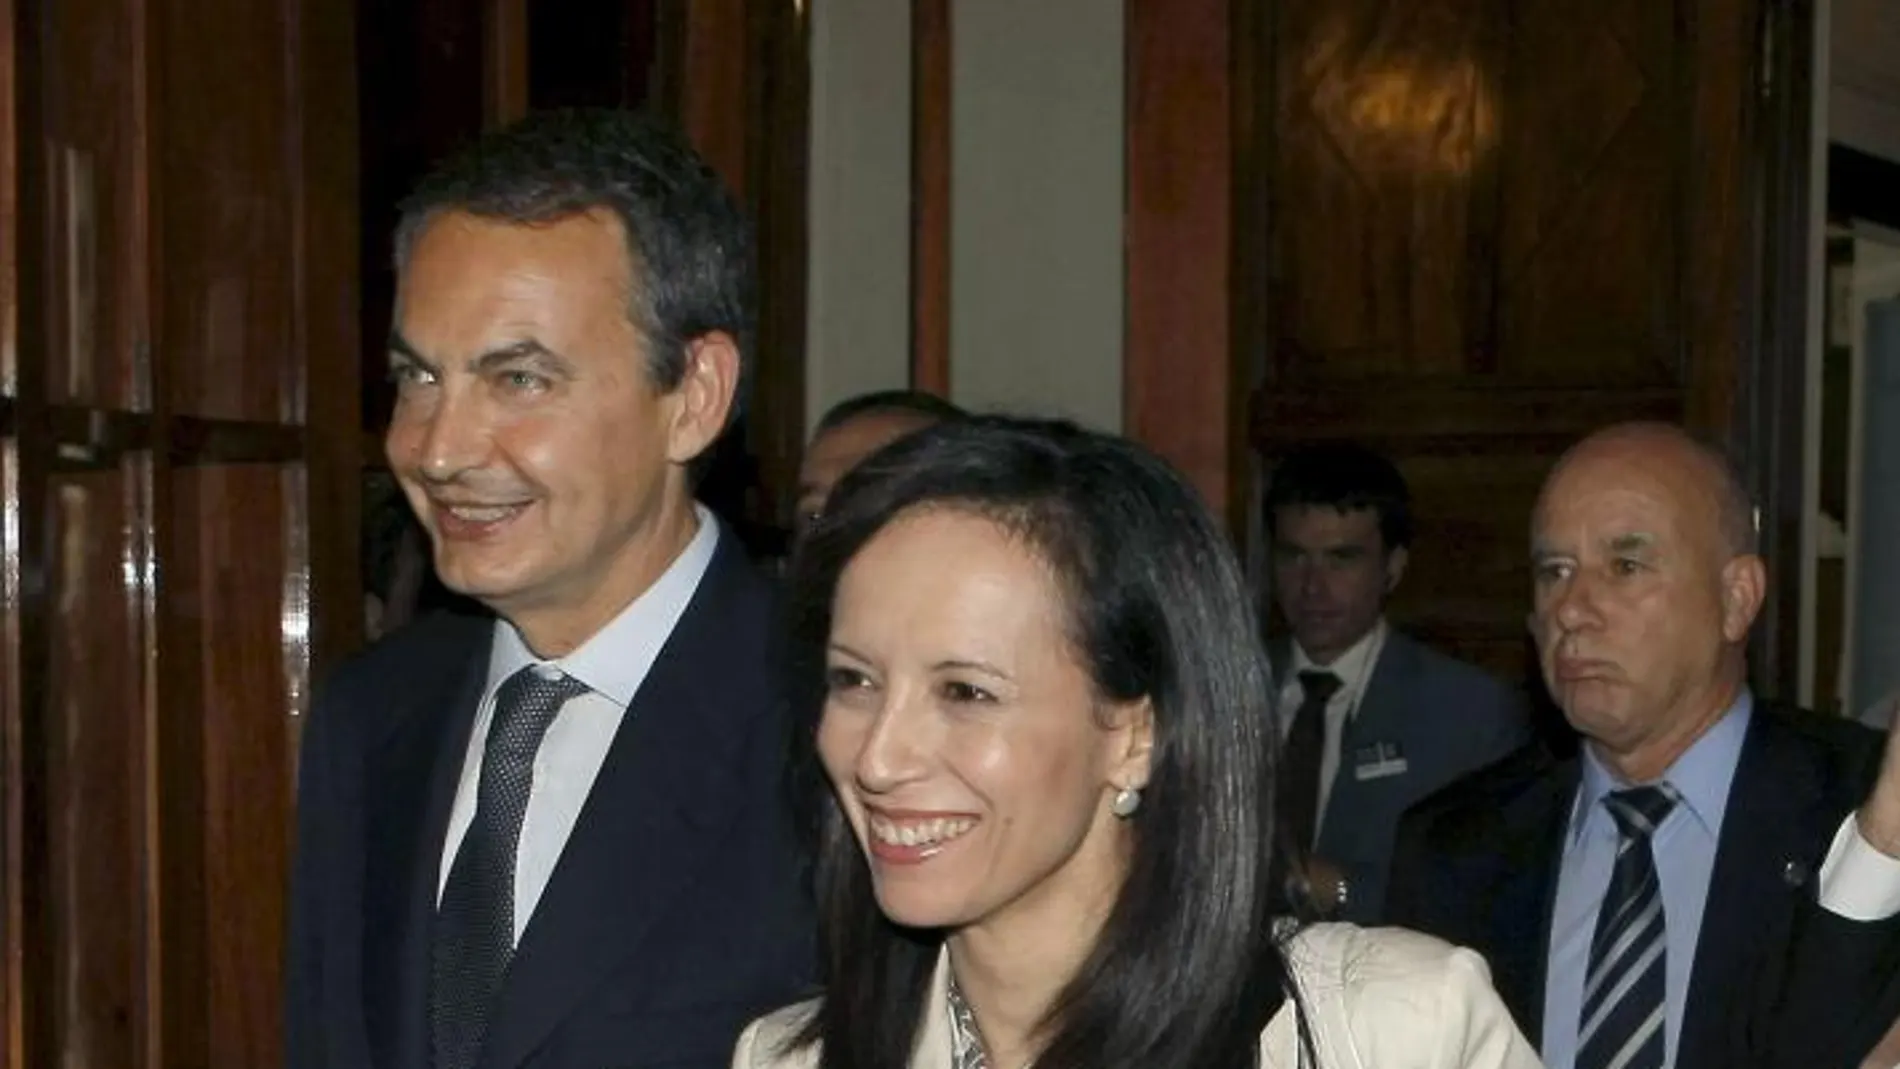 José Luis Rodríguez Zapatero y Beatriz Corredor, en una imagen de archivo/Foto: Efe